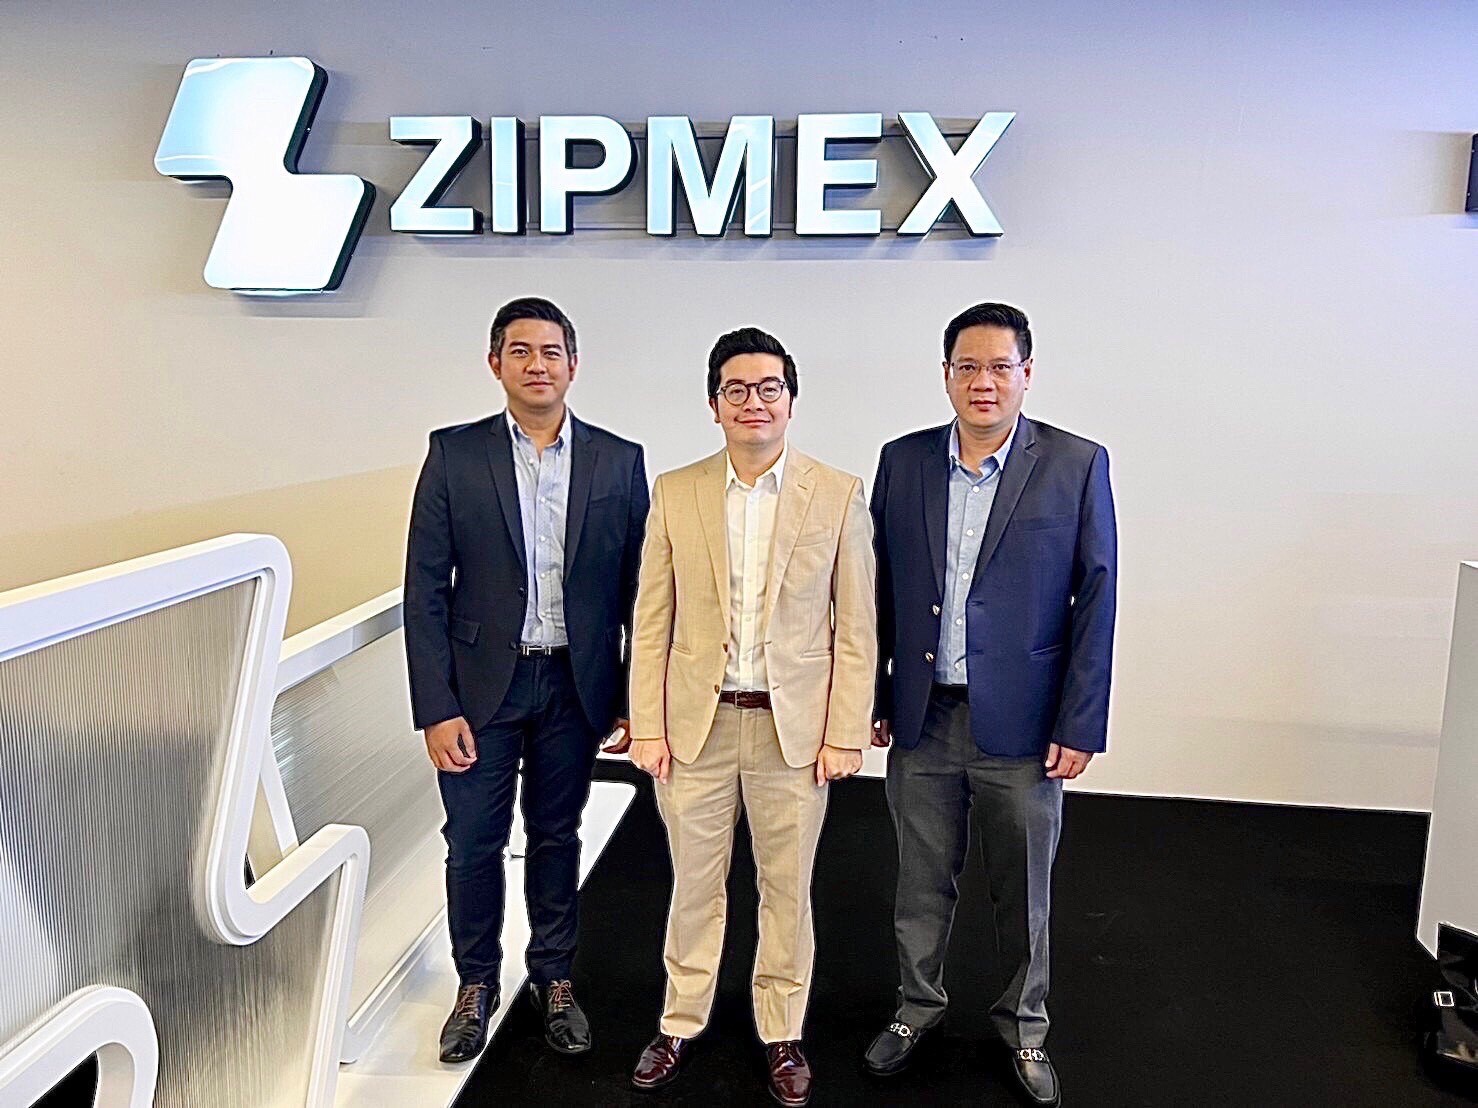 ม.รามฯจับมือบริษัท Zipmex พัฒนาหลักสูตรวิชาการเงิน  "การลงทุนในสินทรัพย์ดิจิทัลและคริปโตเคอเรนซี่"